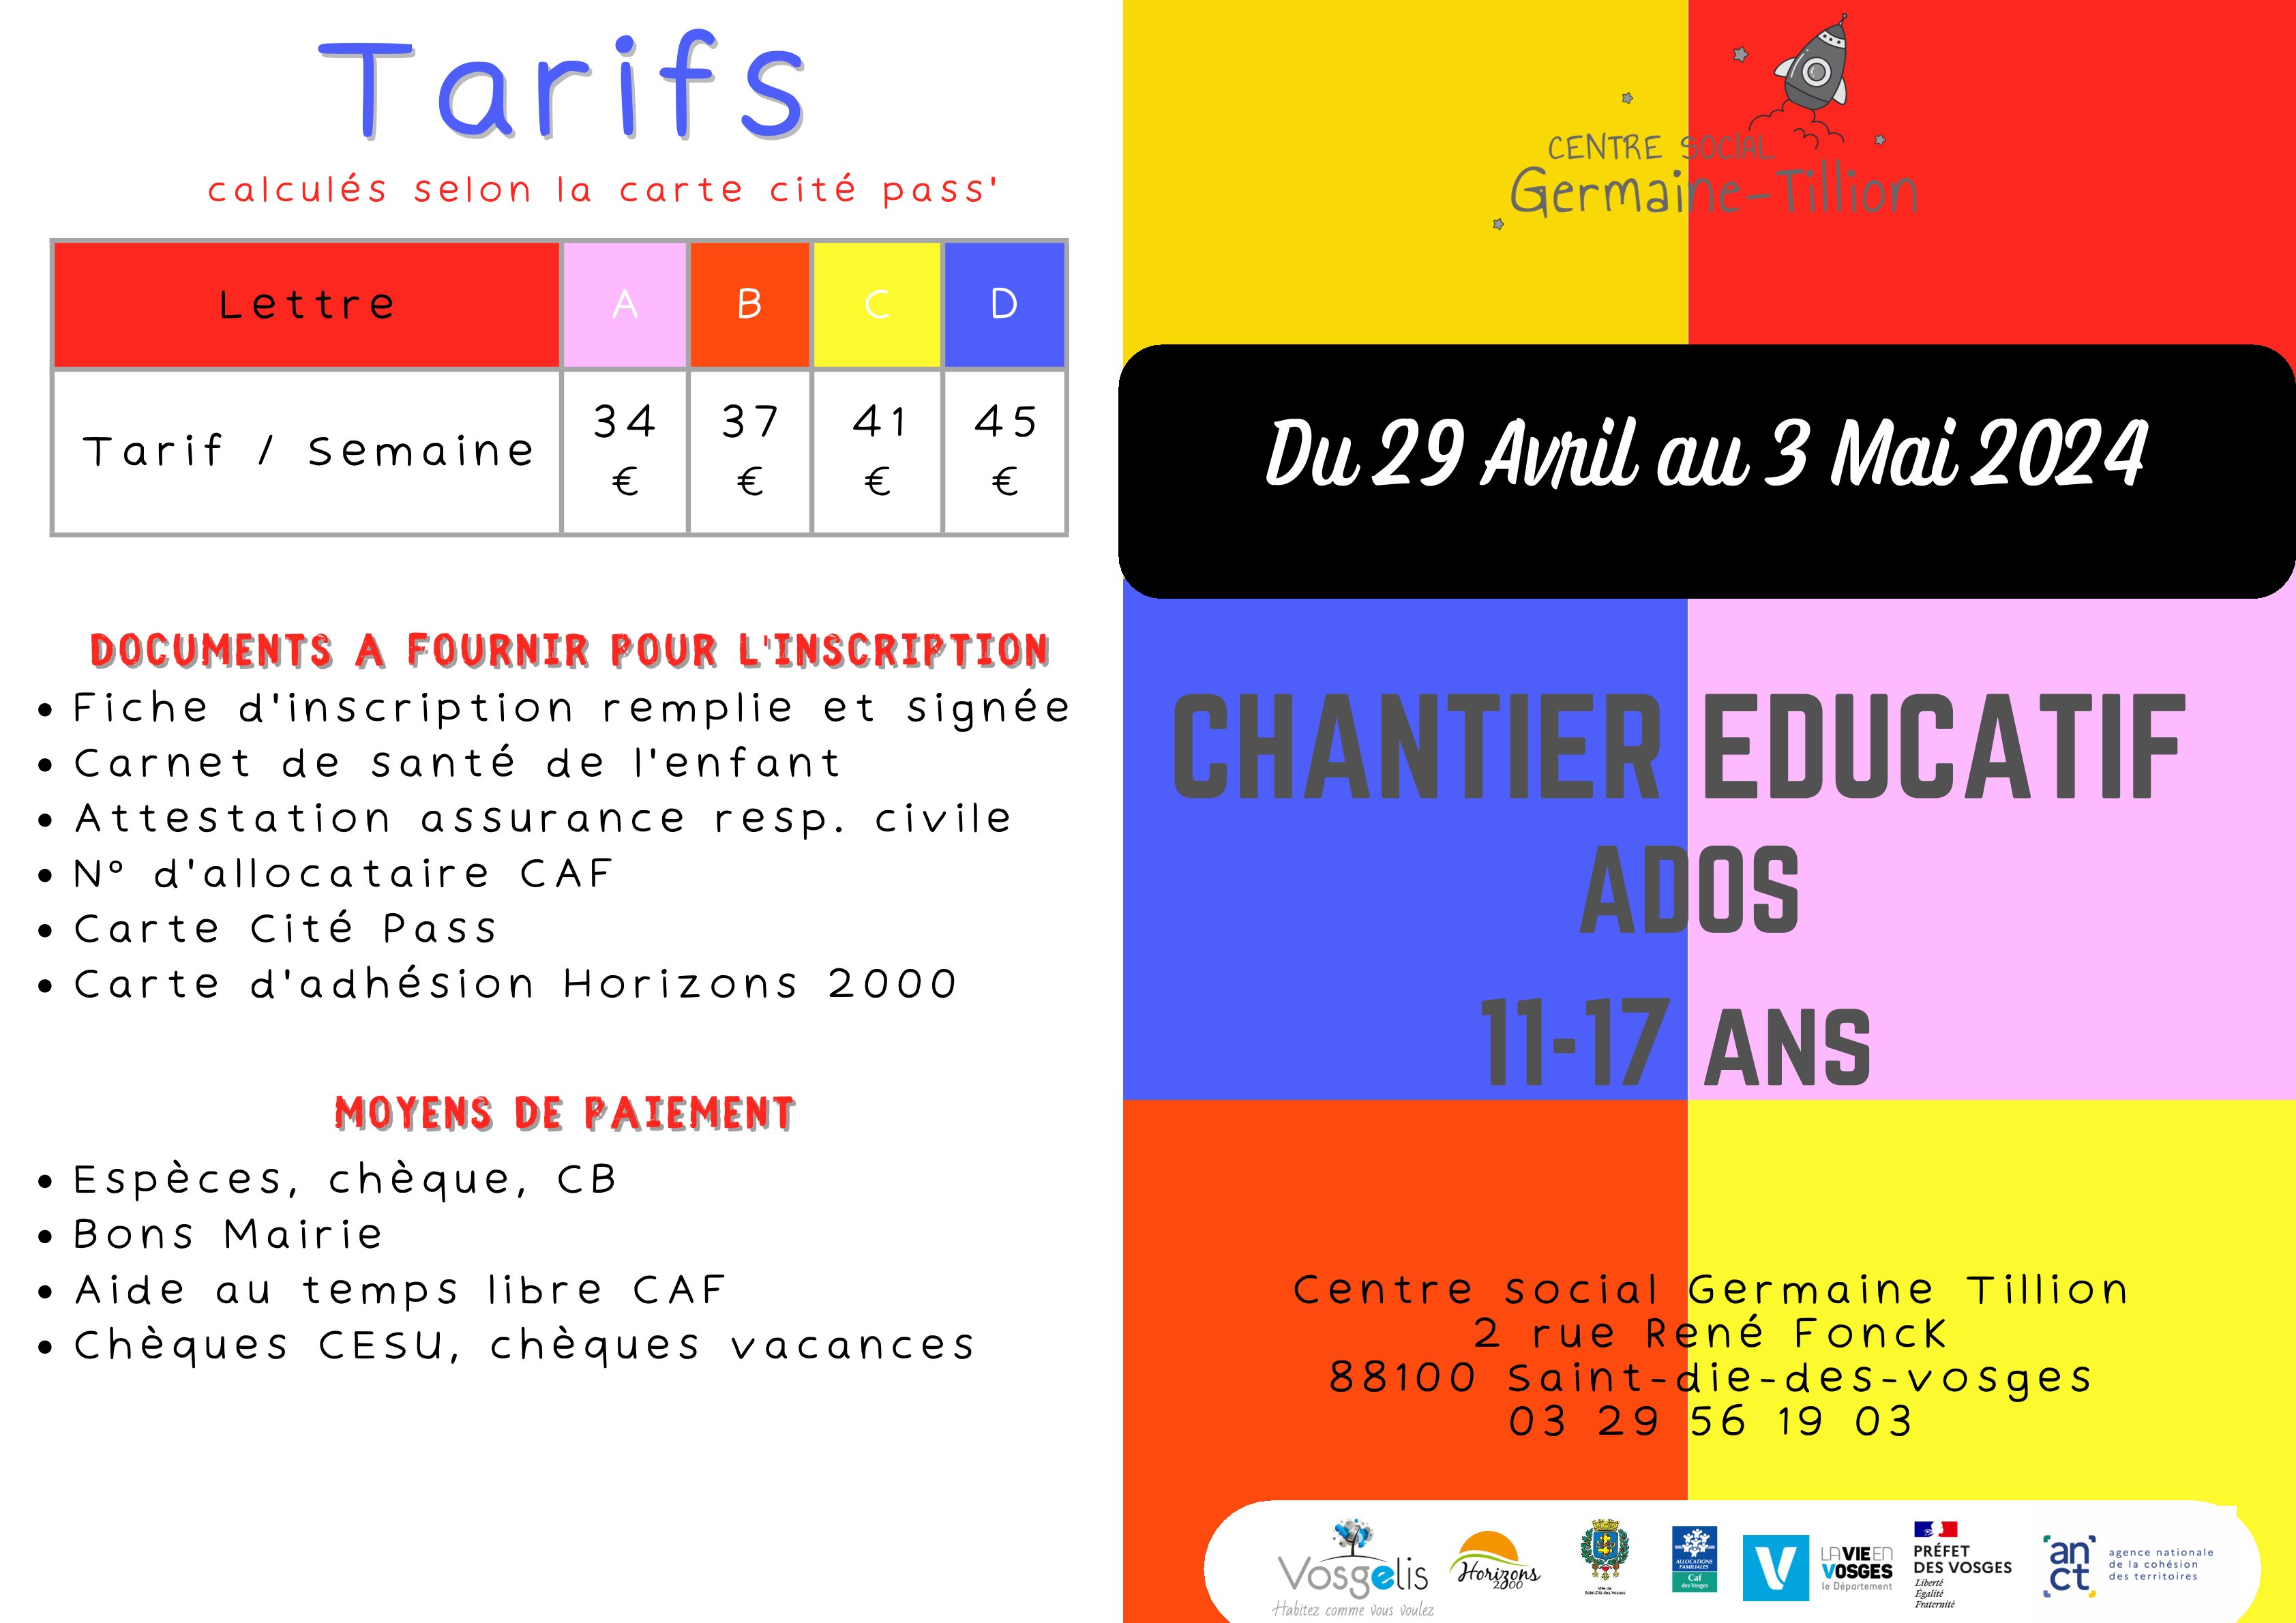 Centre social Germaine Tillion programme 6-11 ans du 13 au 24 02 2023